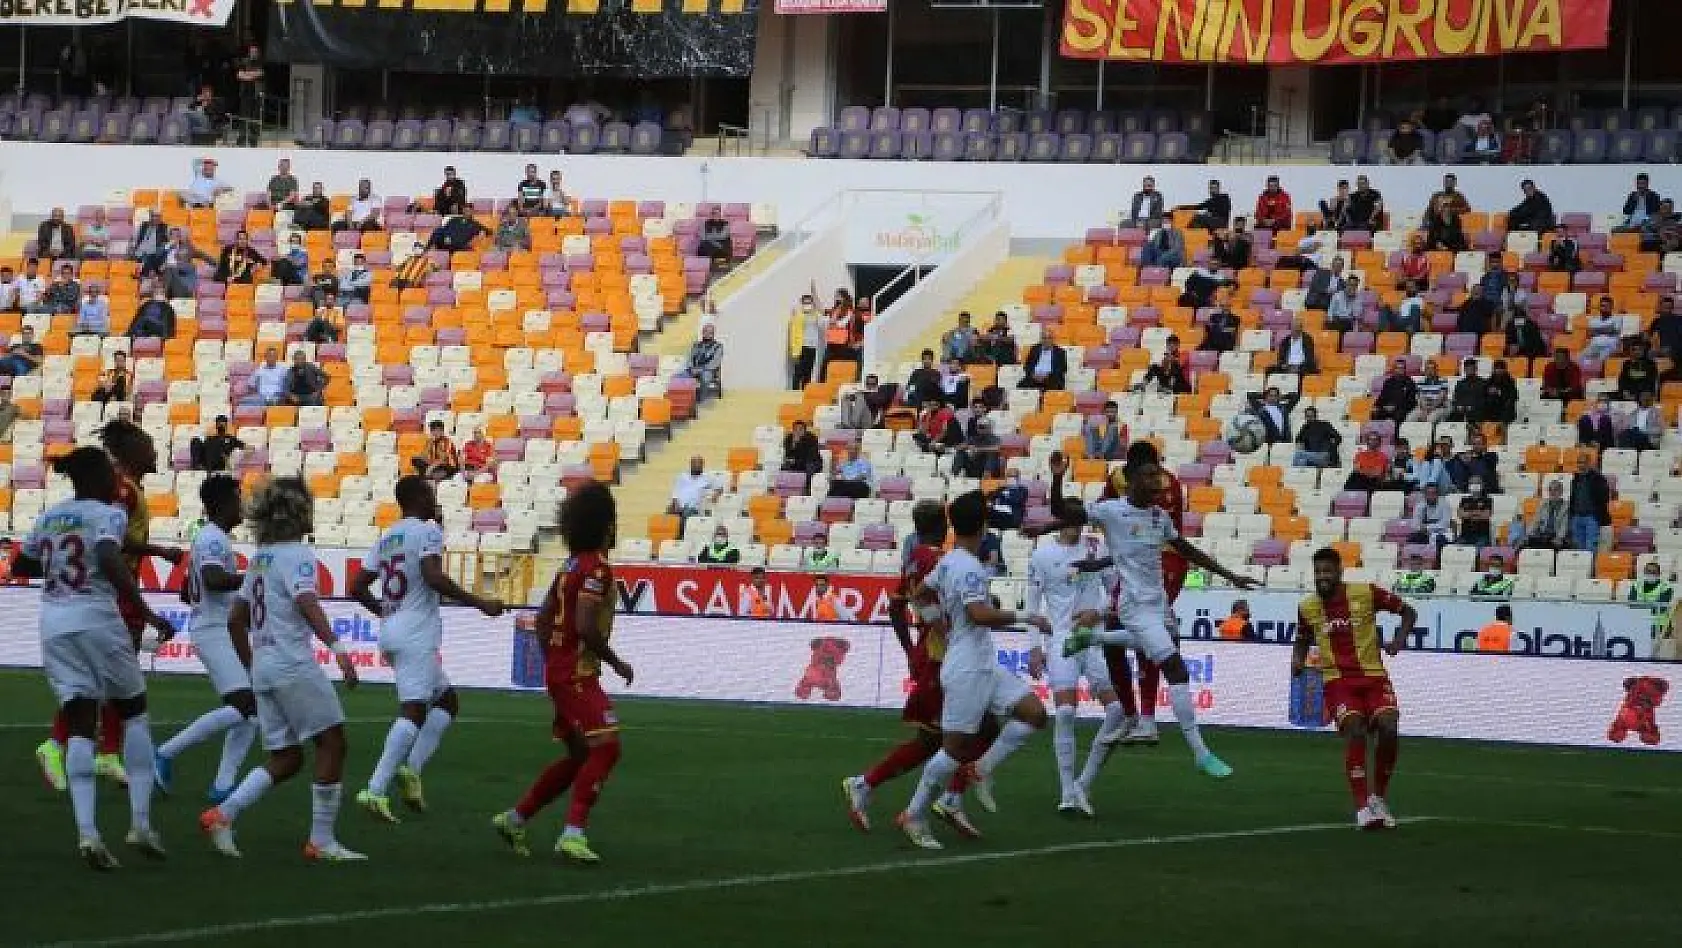 Süper Lig: Yeni Malatyaspor: 0 - Hatayspor: 2 (Maç sonucu)